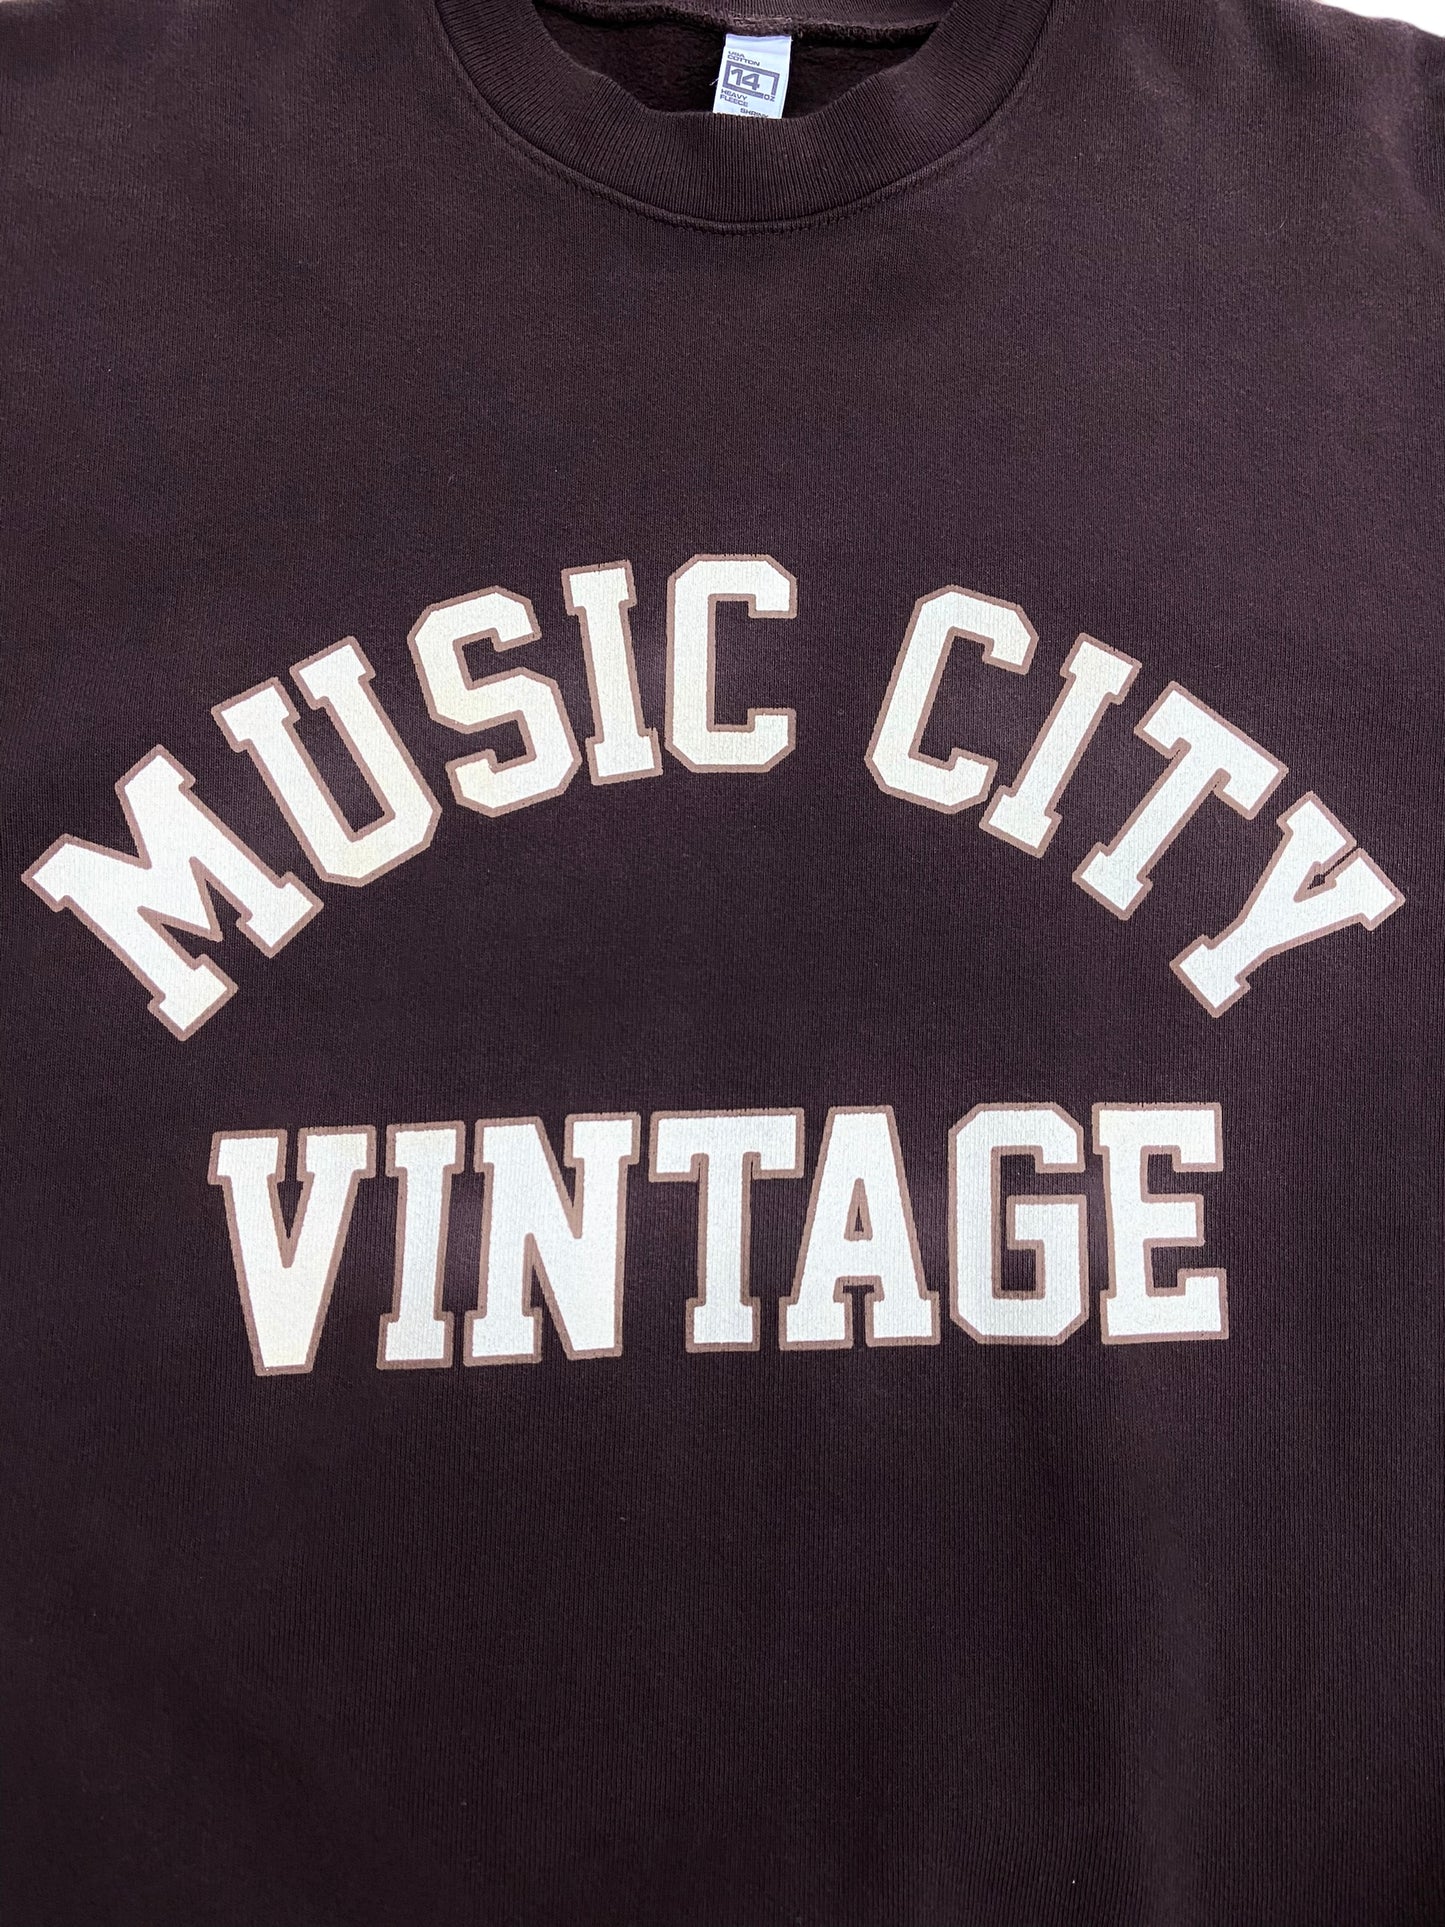 Music City Vintage Collegiate Classic Crewneck 'Chocolate'